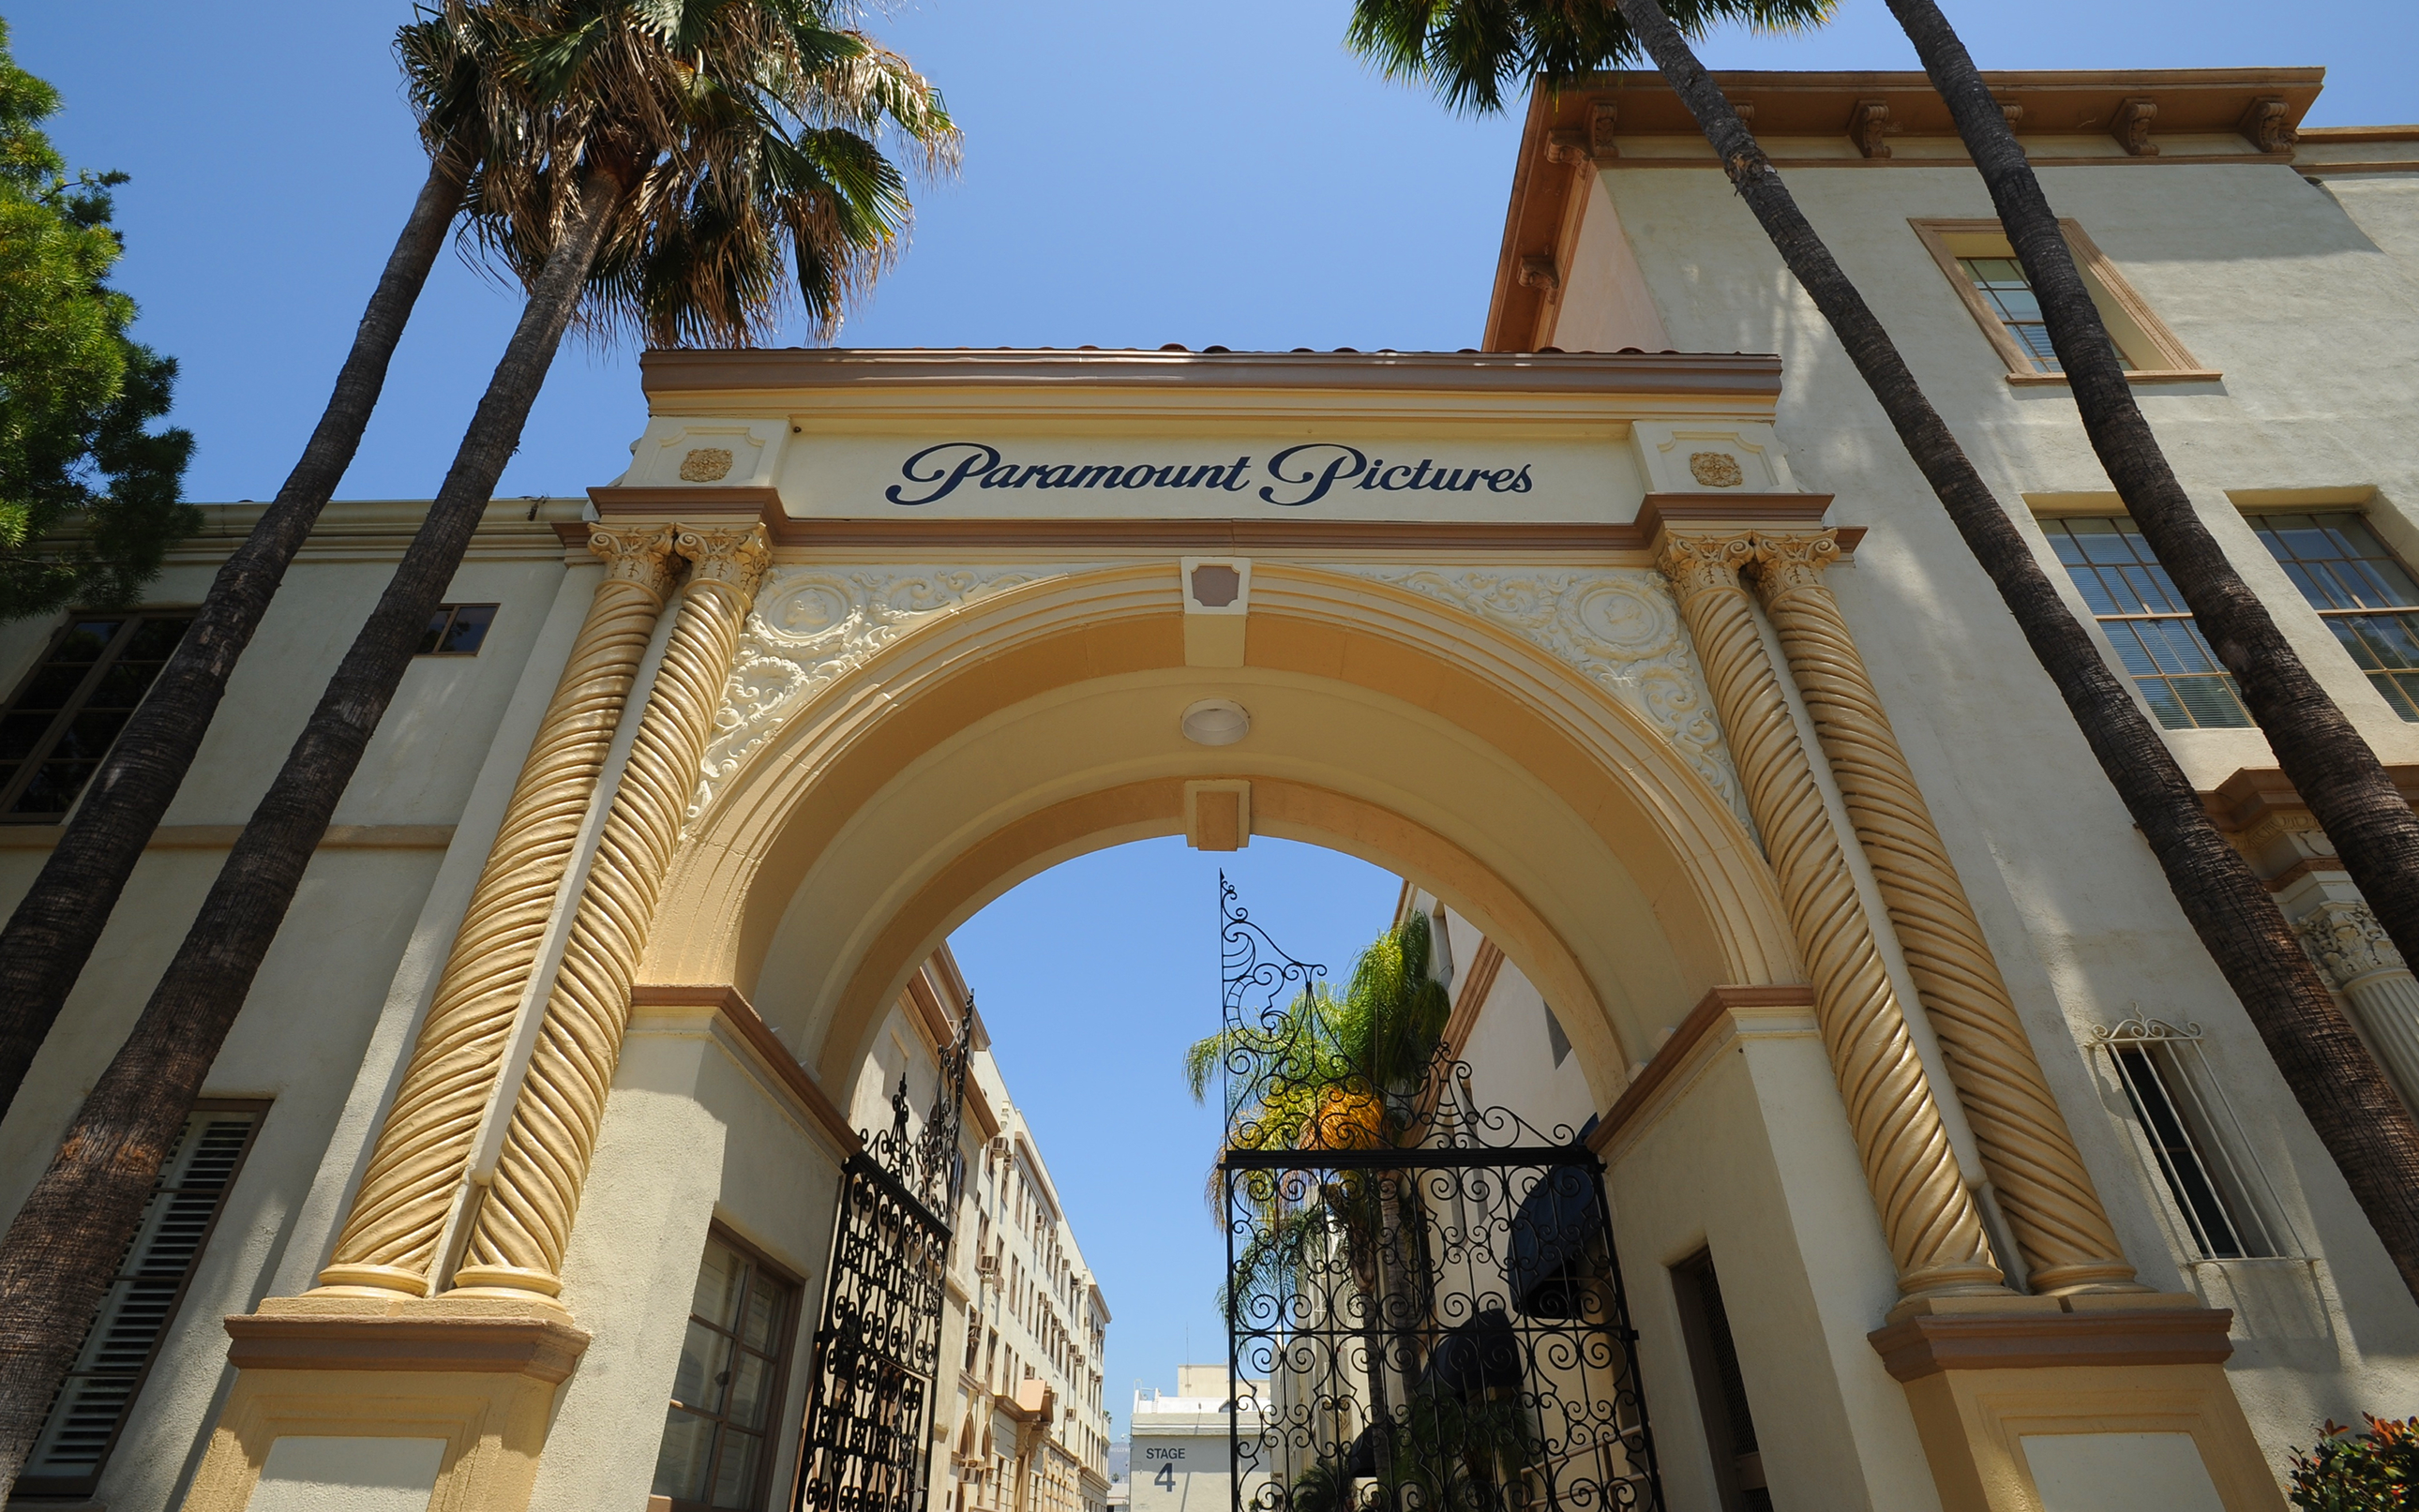 The Studios At Paramount